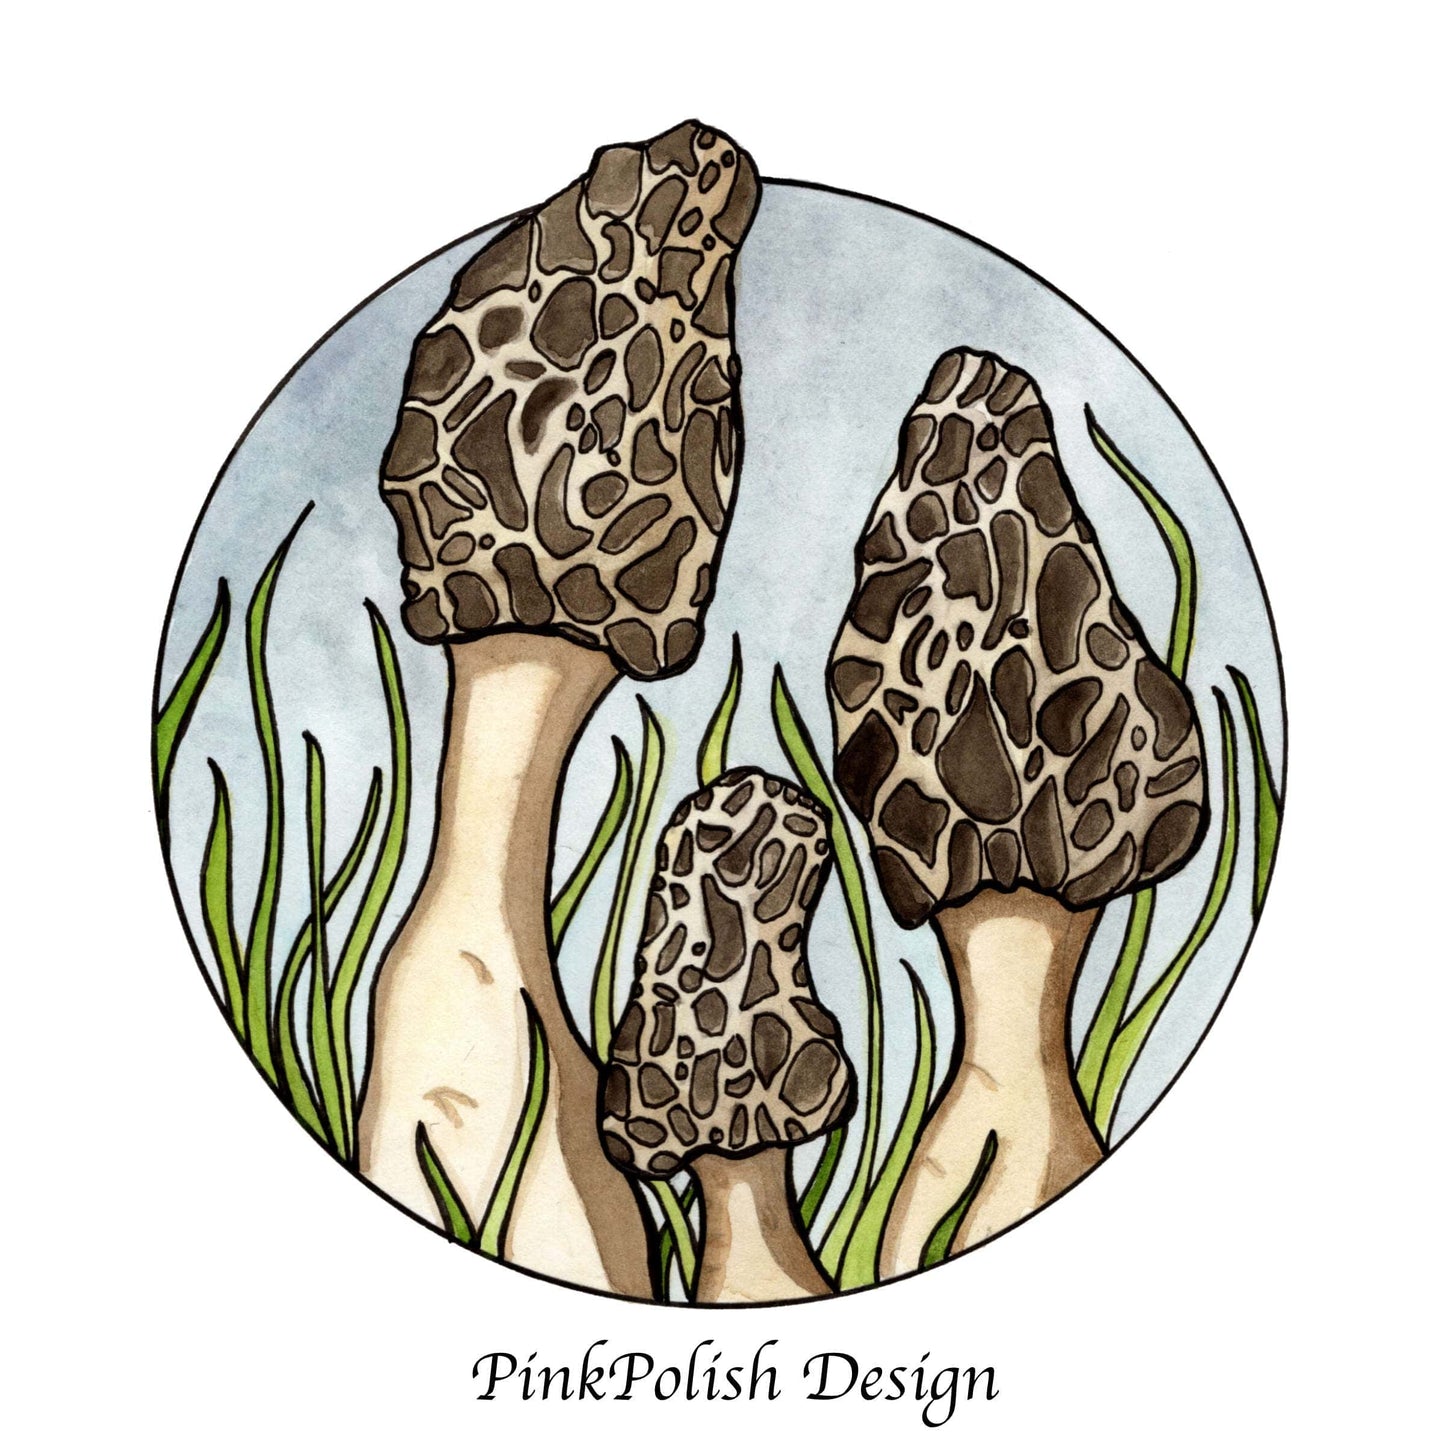 PinkPolish Design Art Prints "Morel Mushrooms"  Watercolor Painting: Art Print